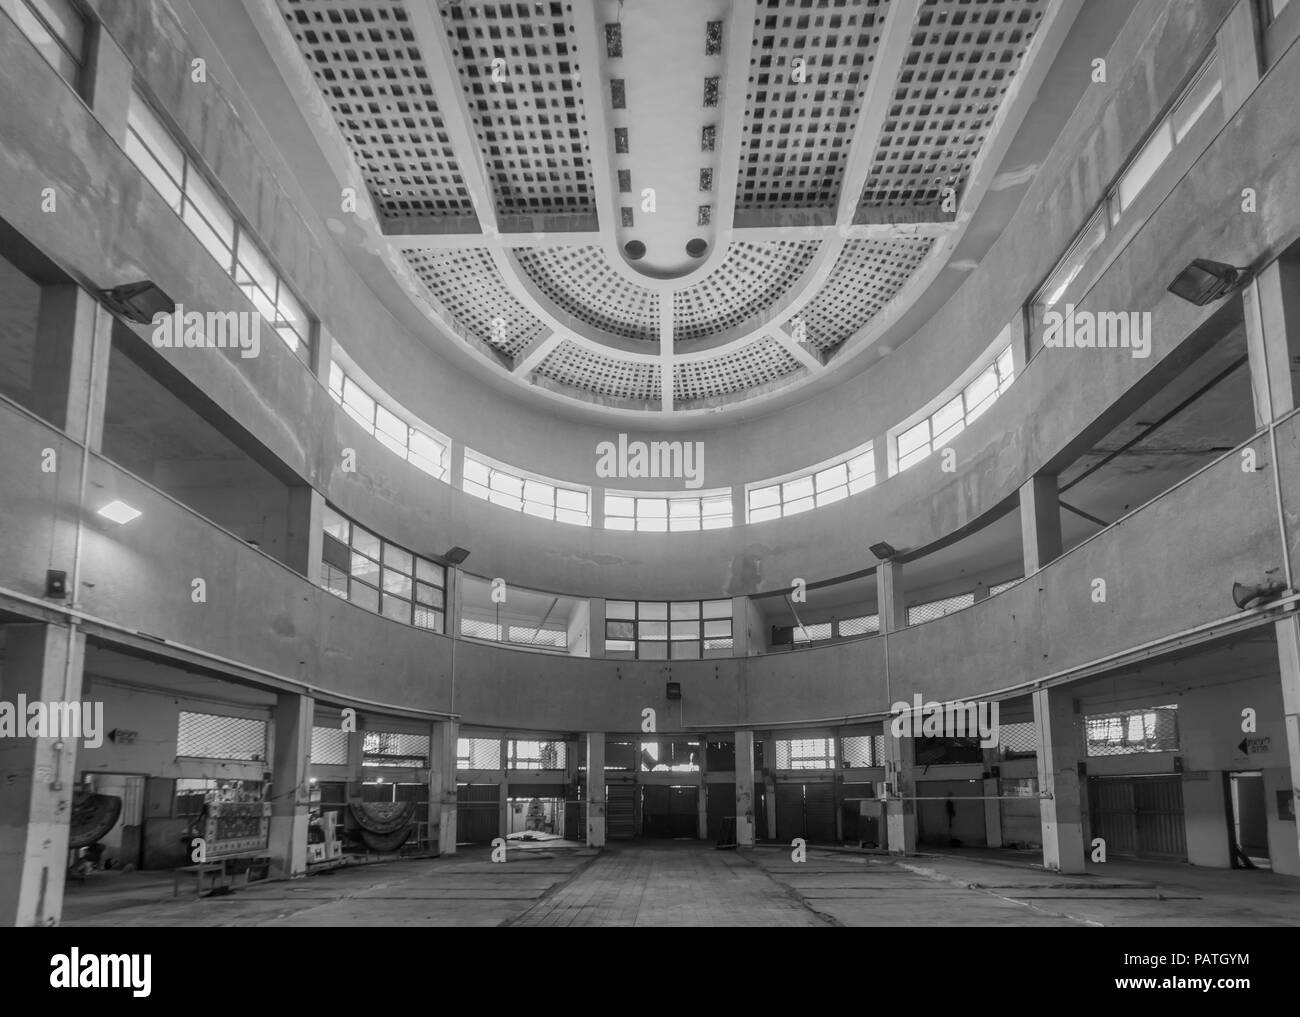 Haïfa, Israël - 20 juillet 2018 : vue de l'intérieur de l'édifice du marché Talpiot historique, construit dans le style Bauhaus (international), dans Hadar HaCarmel neighb Banque D'Images